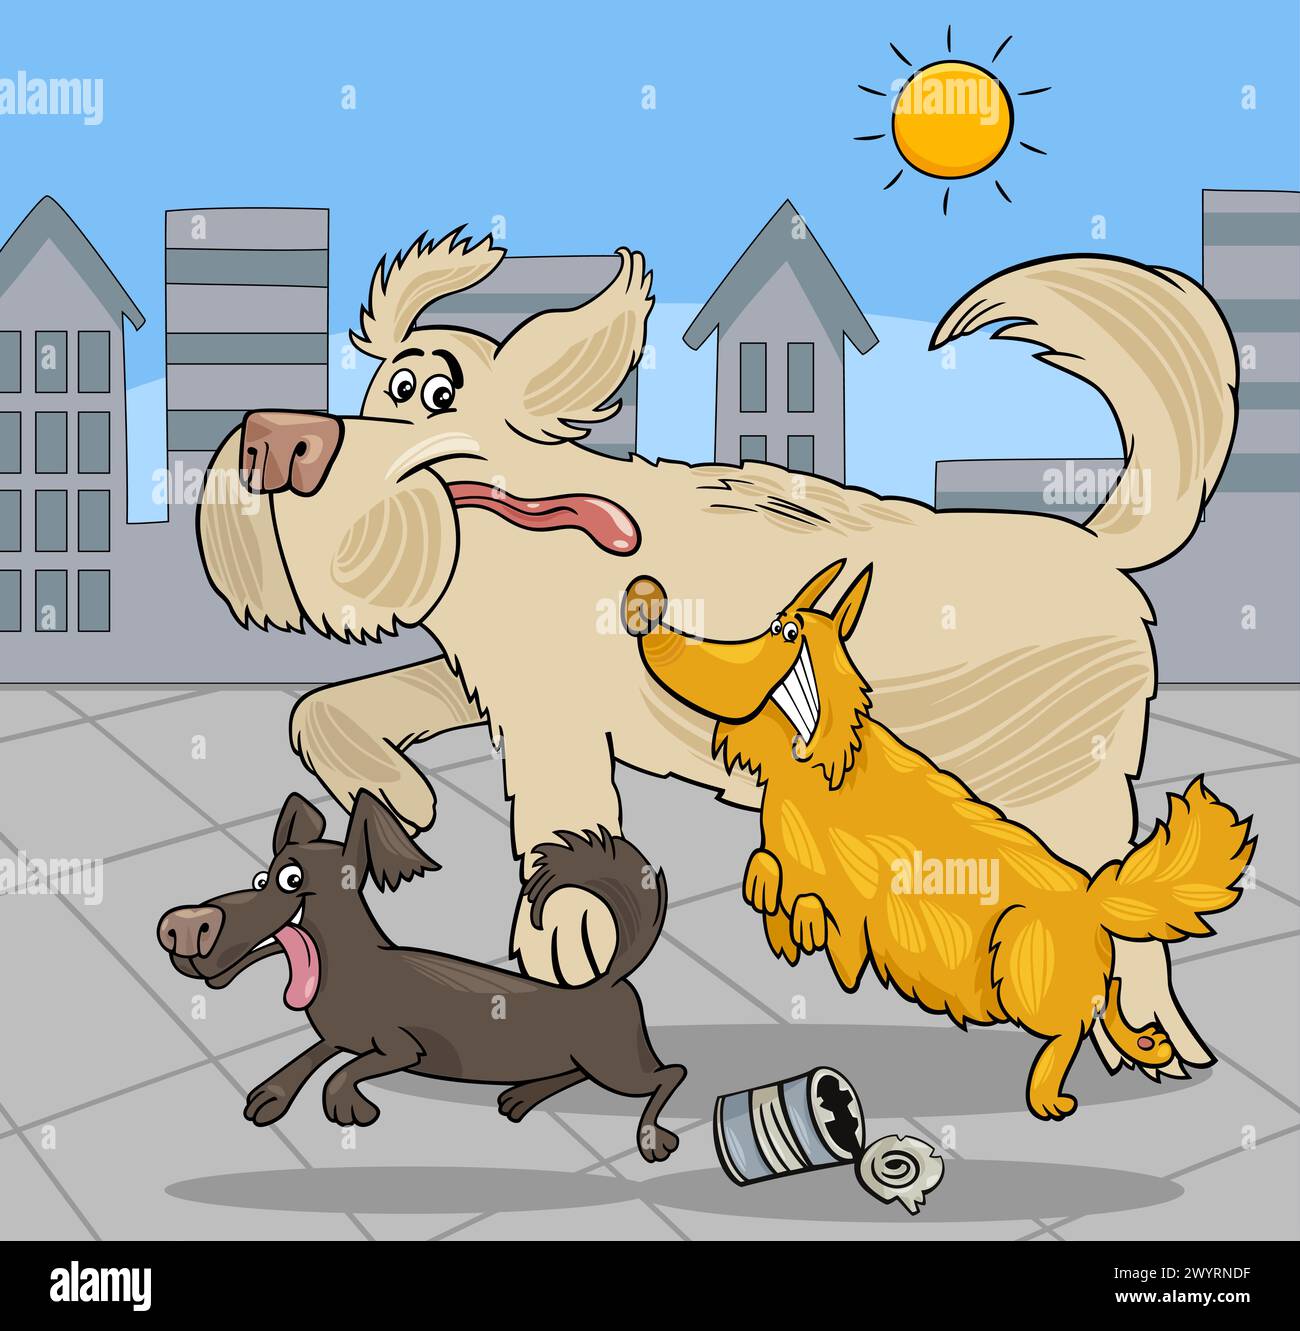 Illustration de dessin animé du groupe de personnages animaux heureux de chiens en cours d'exécution Illustration de Vecteur